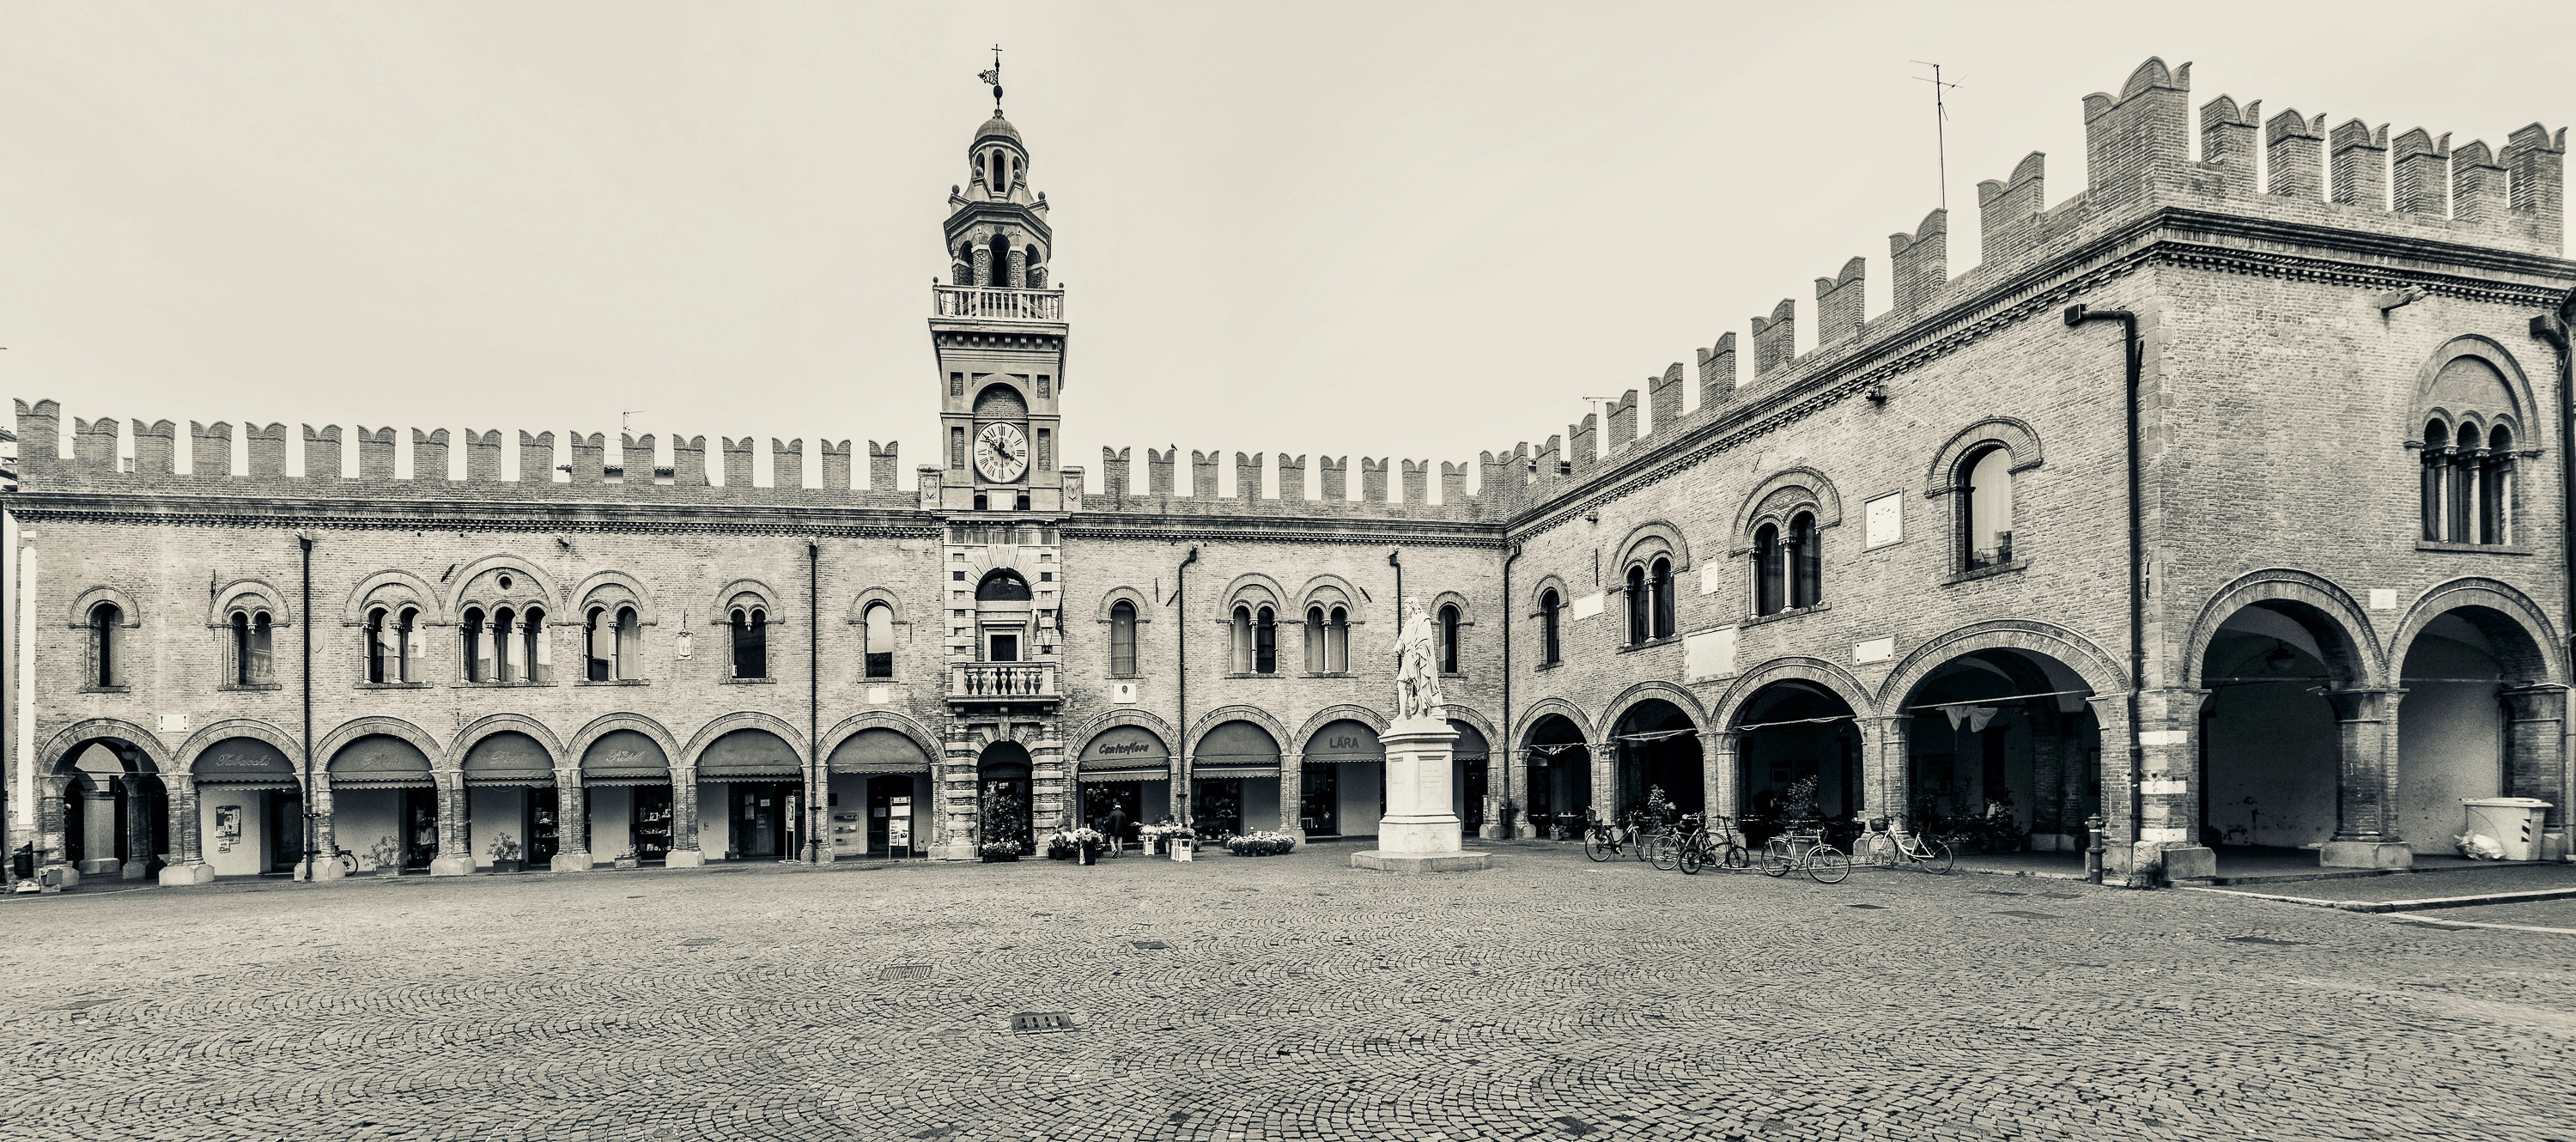 foto: https://upload.wikimedia.org/wikipedia/commons/6/68/Palazzo_del_Governatore_-_Piazza_di_Cento.jpg